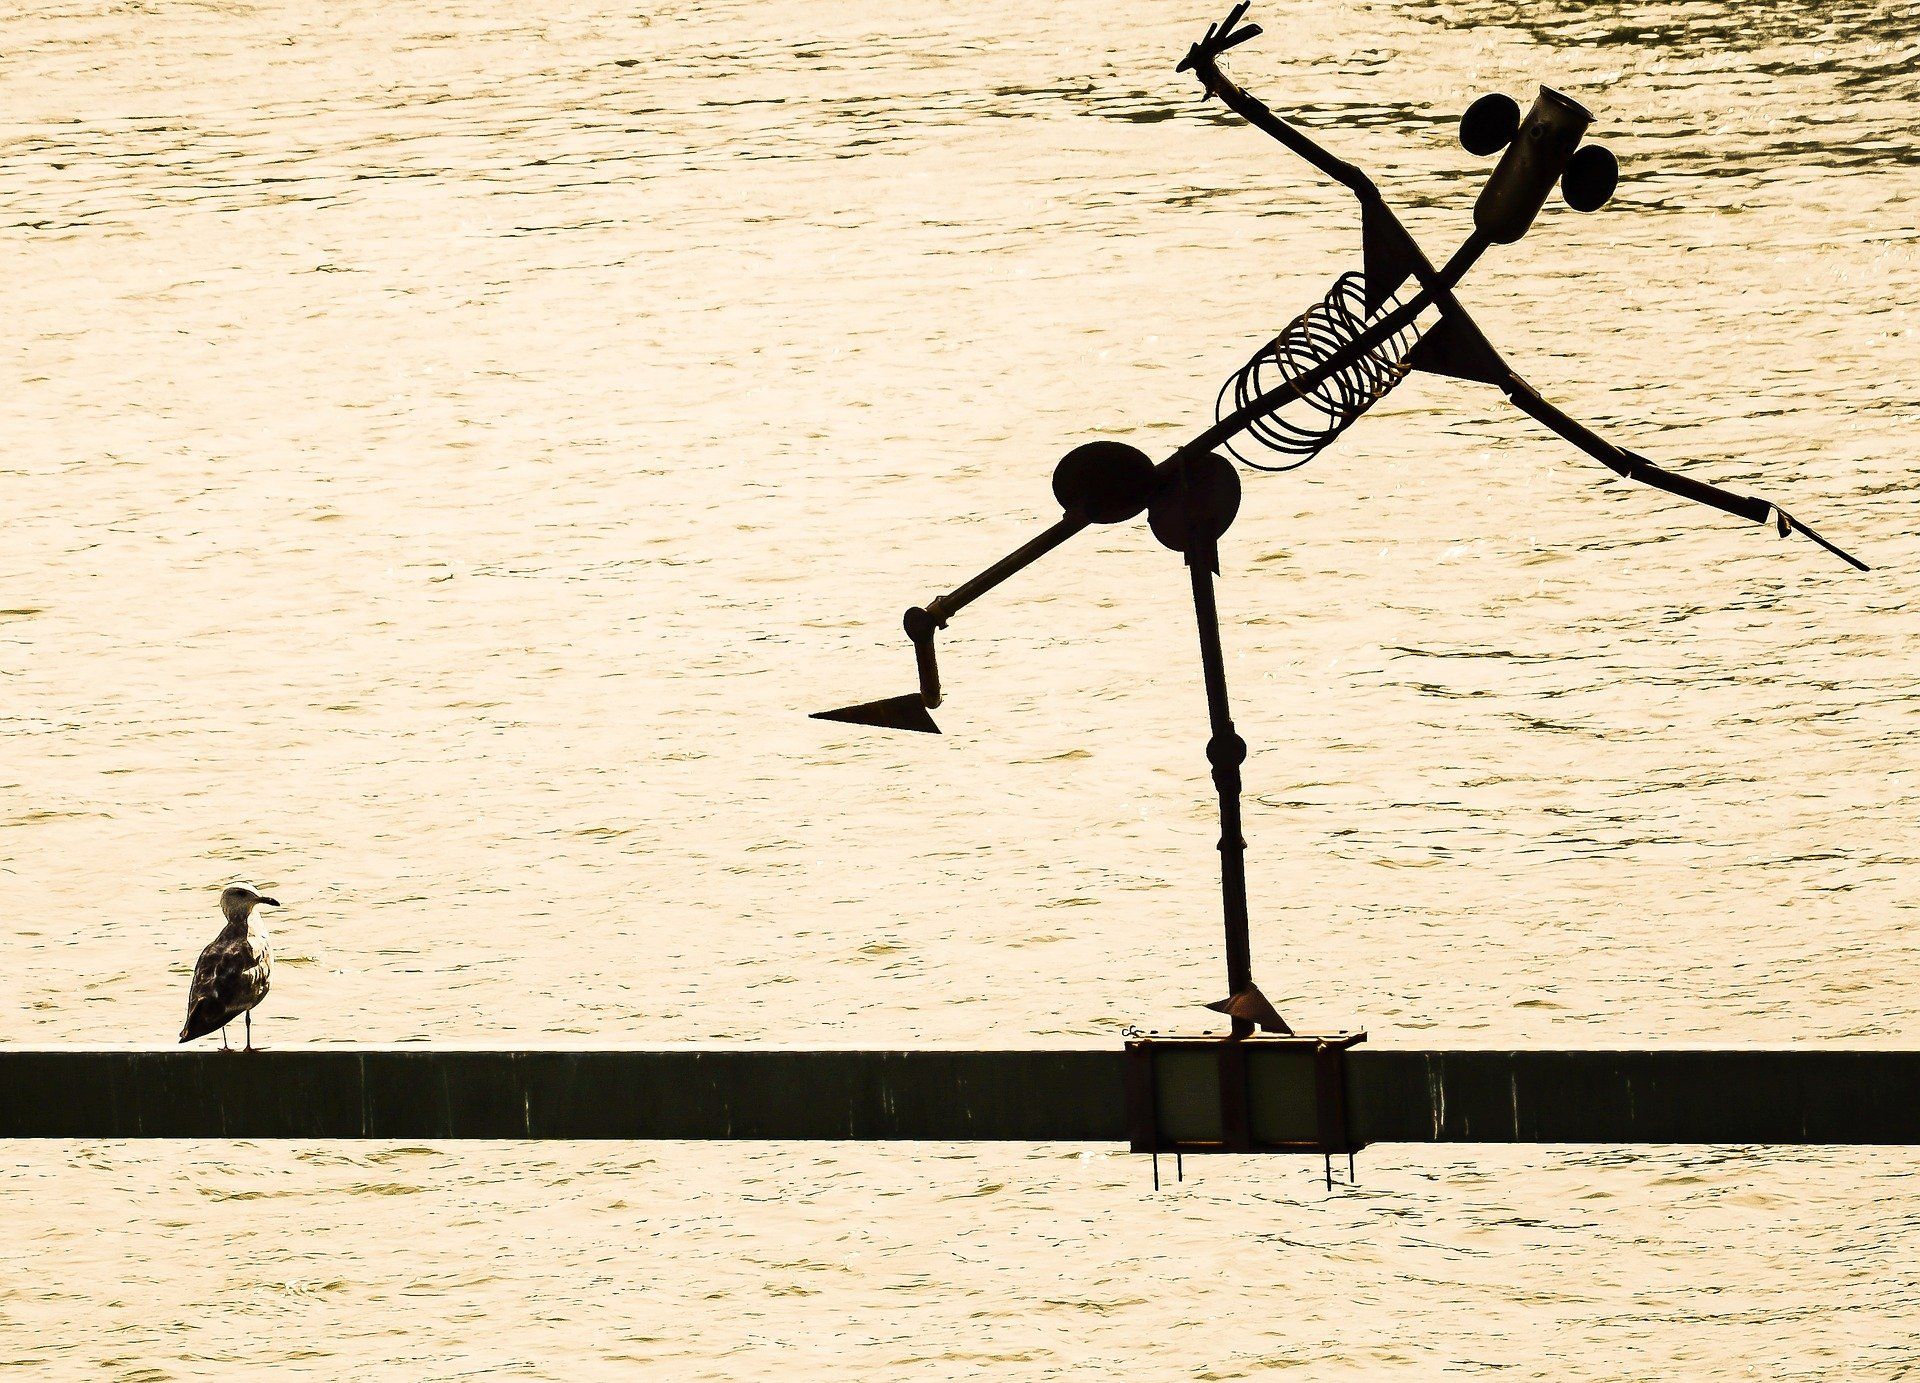 A seagull sits on a sculpture in the Danube in Belgrade, Serbia. - Dance